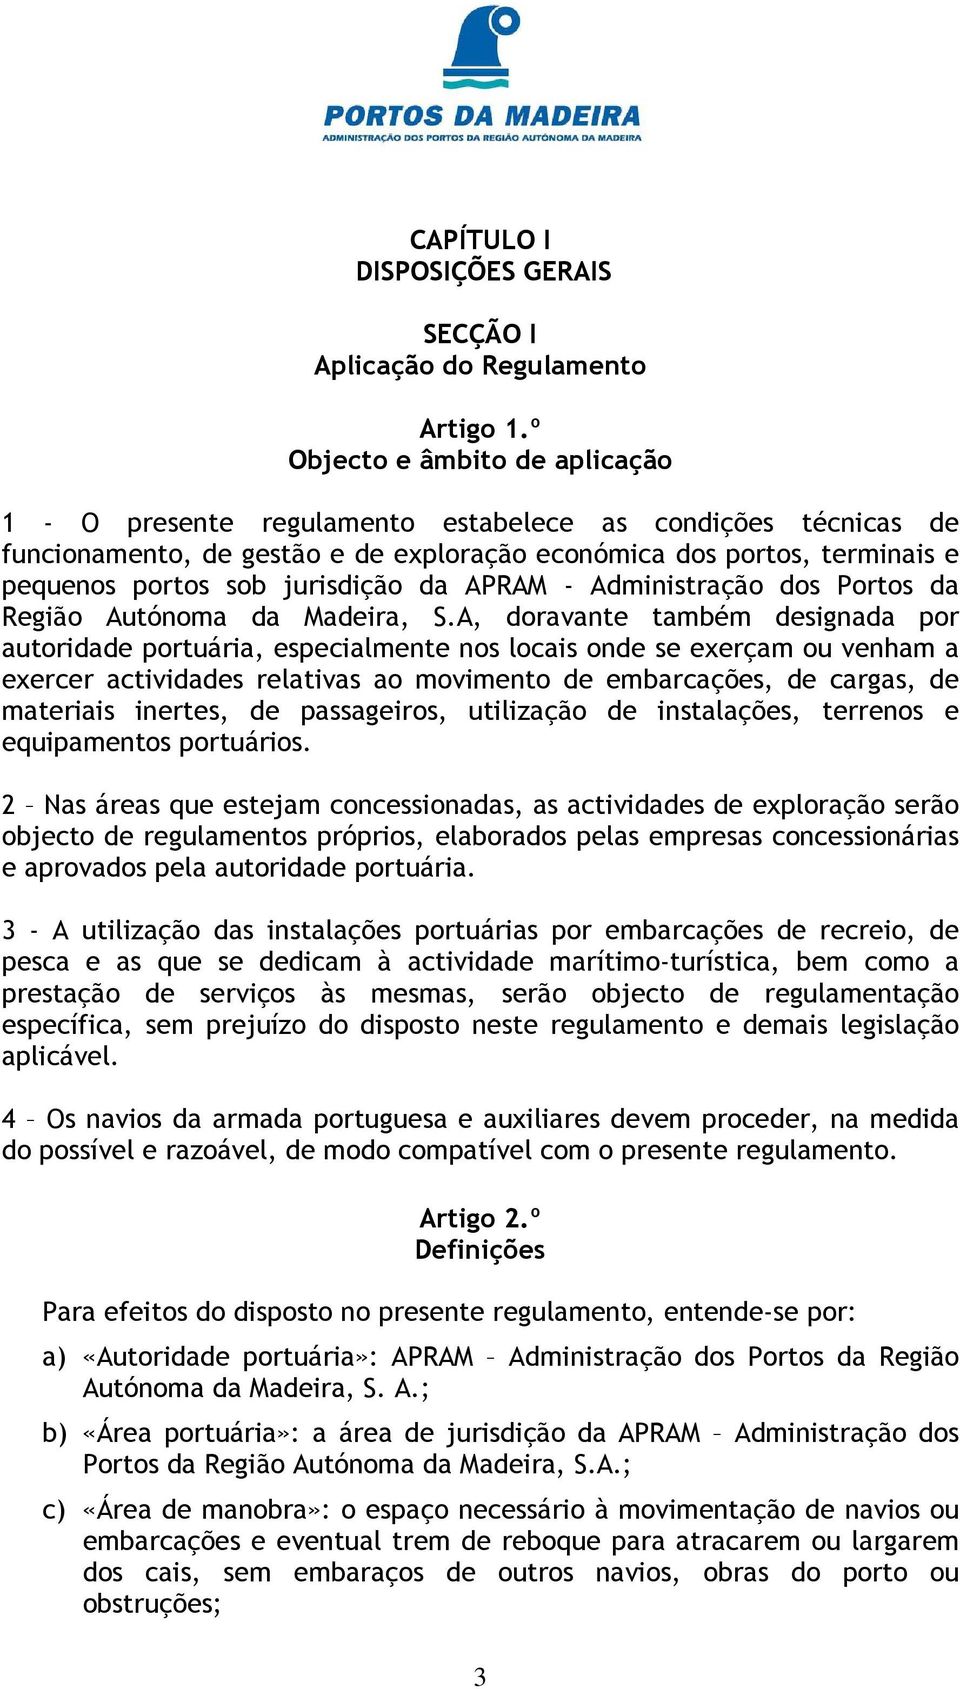 jurisdição da APRAM - Administração dos Portos da Região Autónoma da Madeira, S.